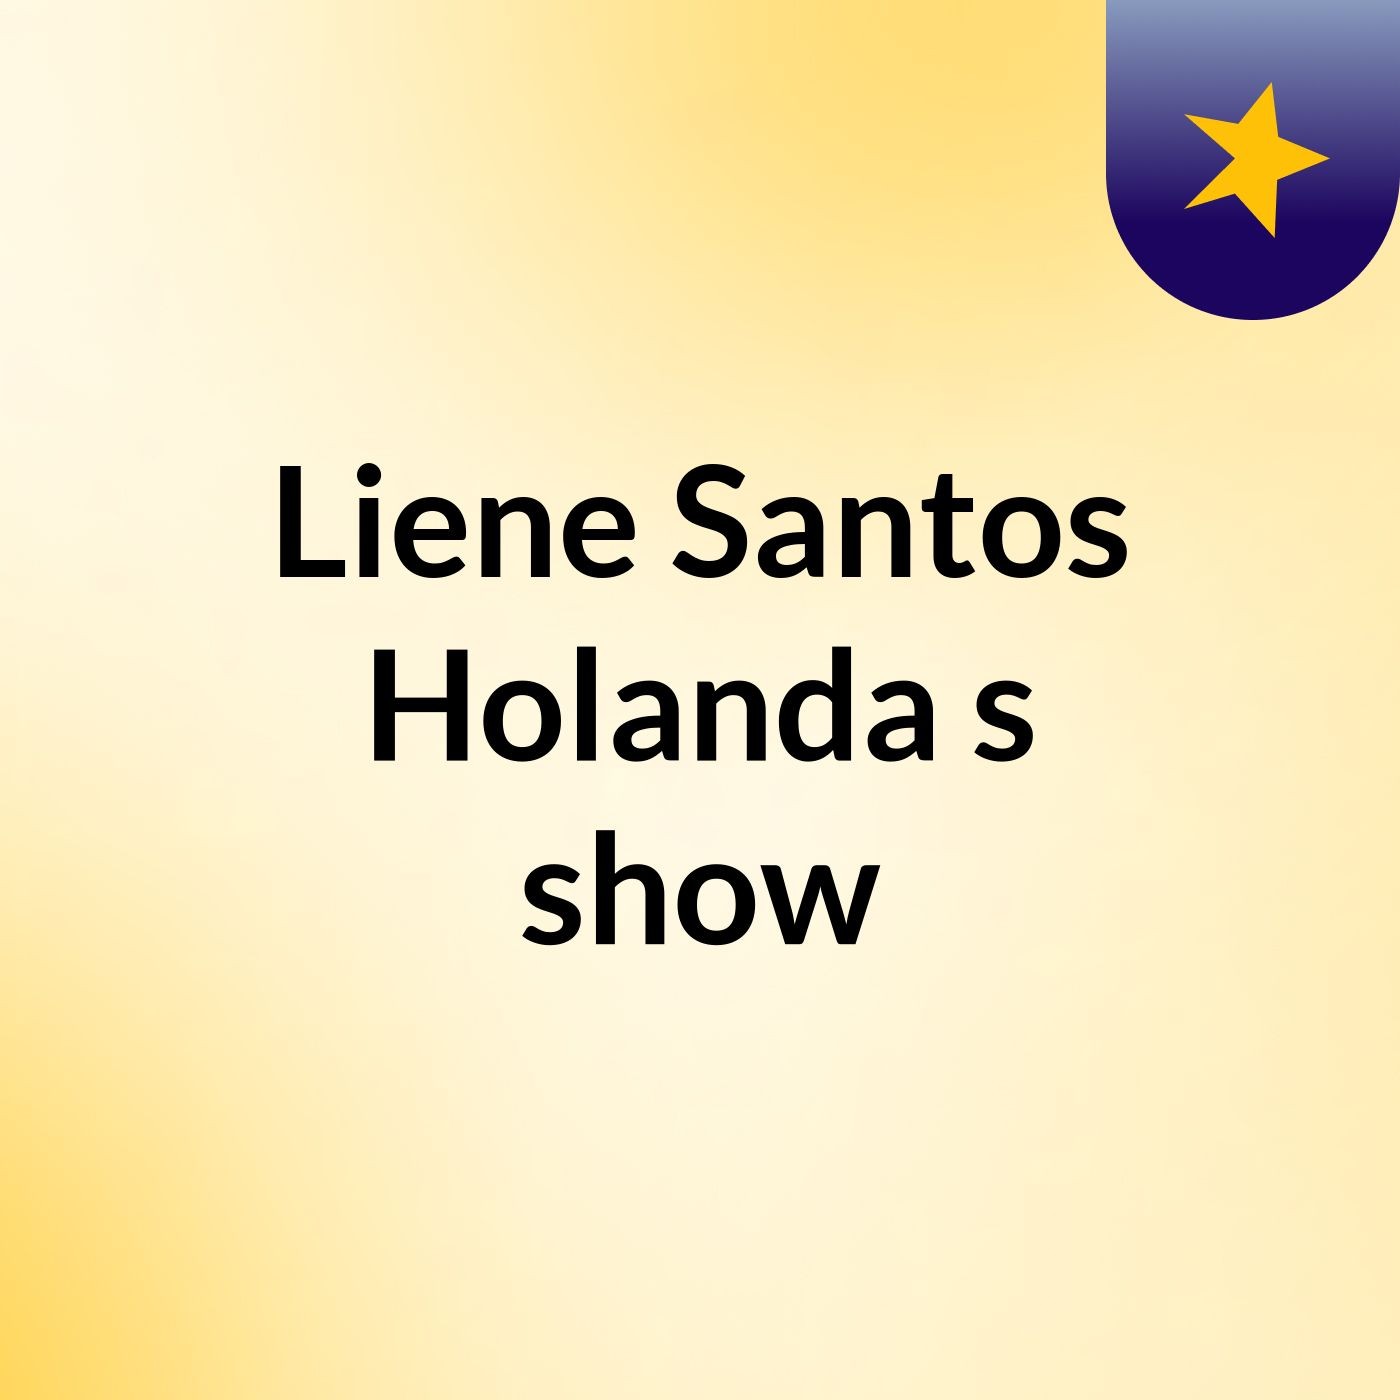 Liene Santos Holanda's show